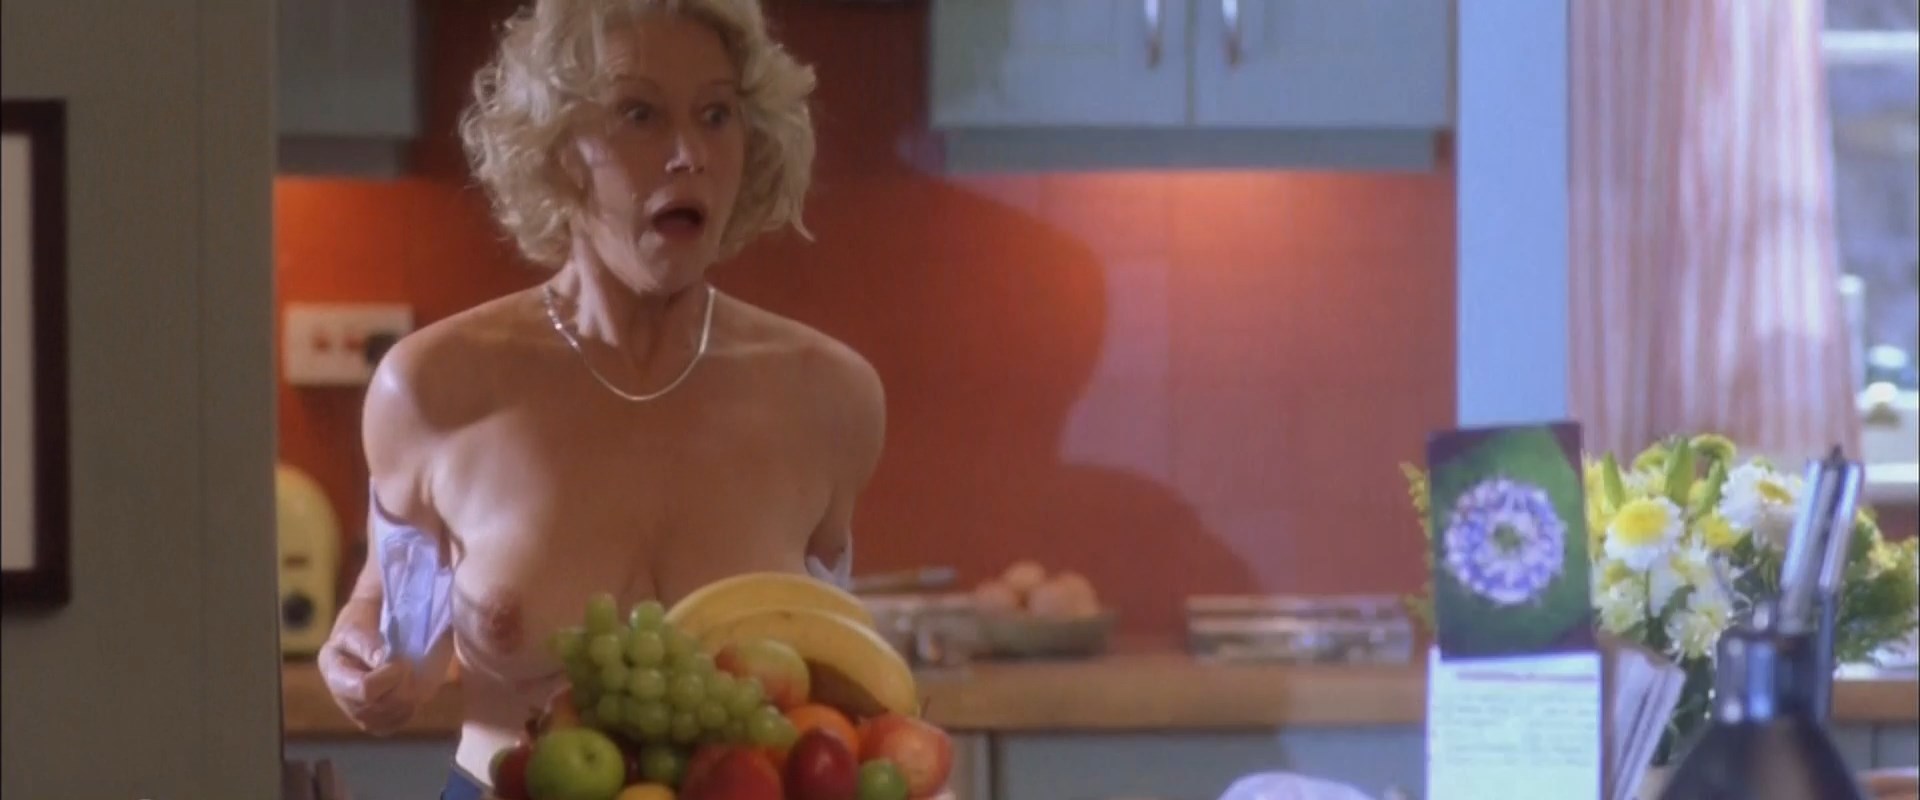 Helen Mirren Nude Calender Pictures 40